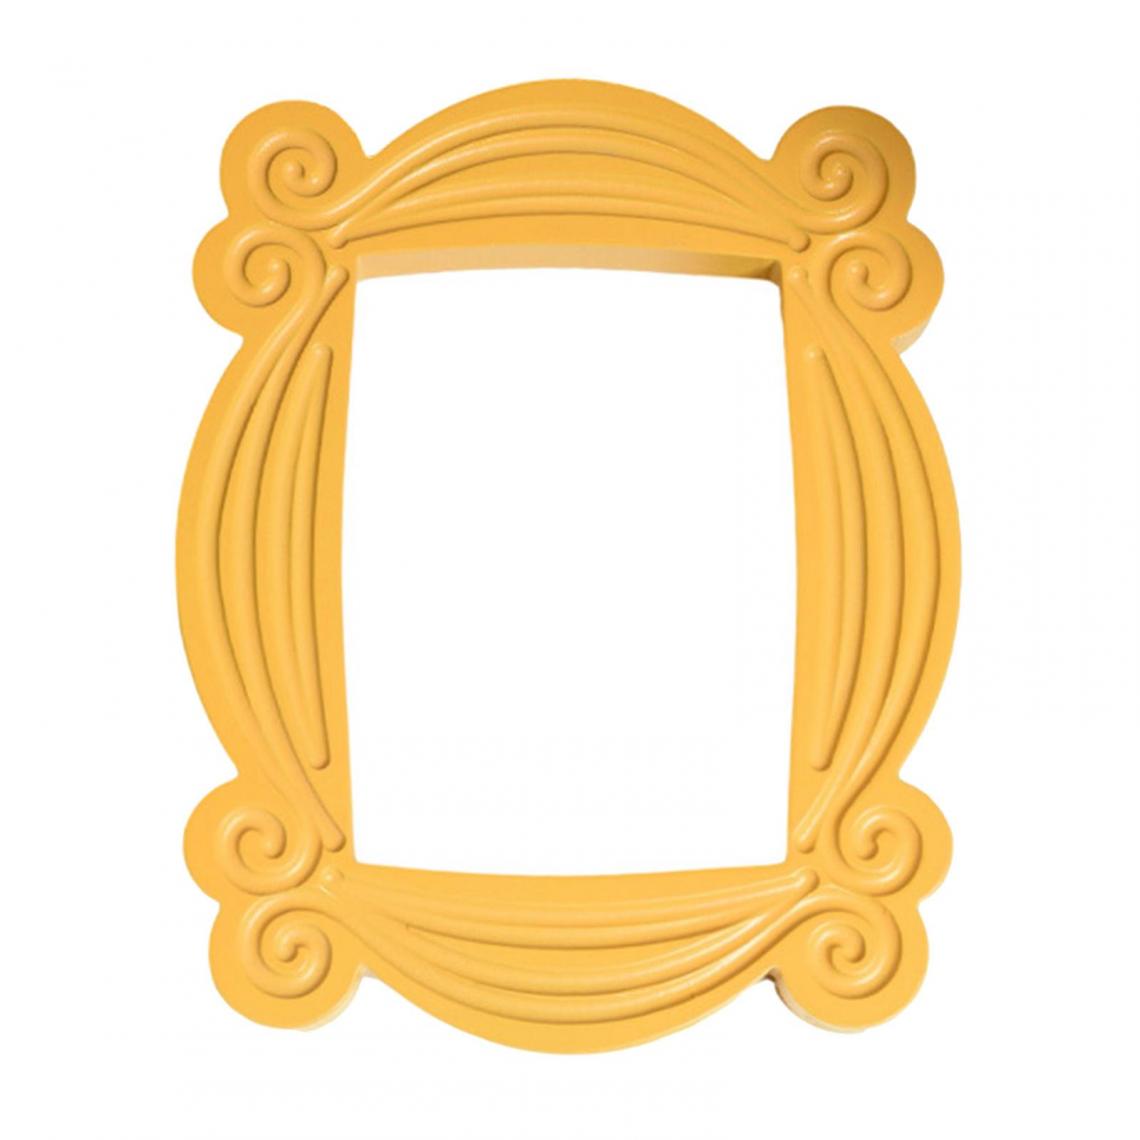 marque generique - Miroir de porte à cadre jaune Friends TV Show - Cadres, pêle-mêle